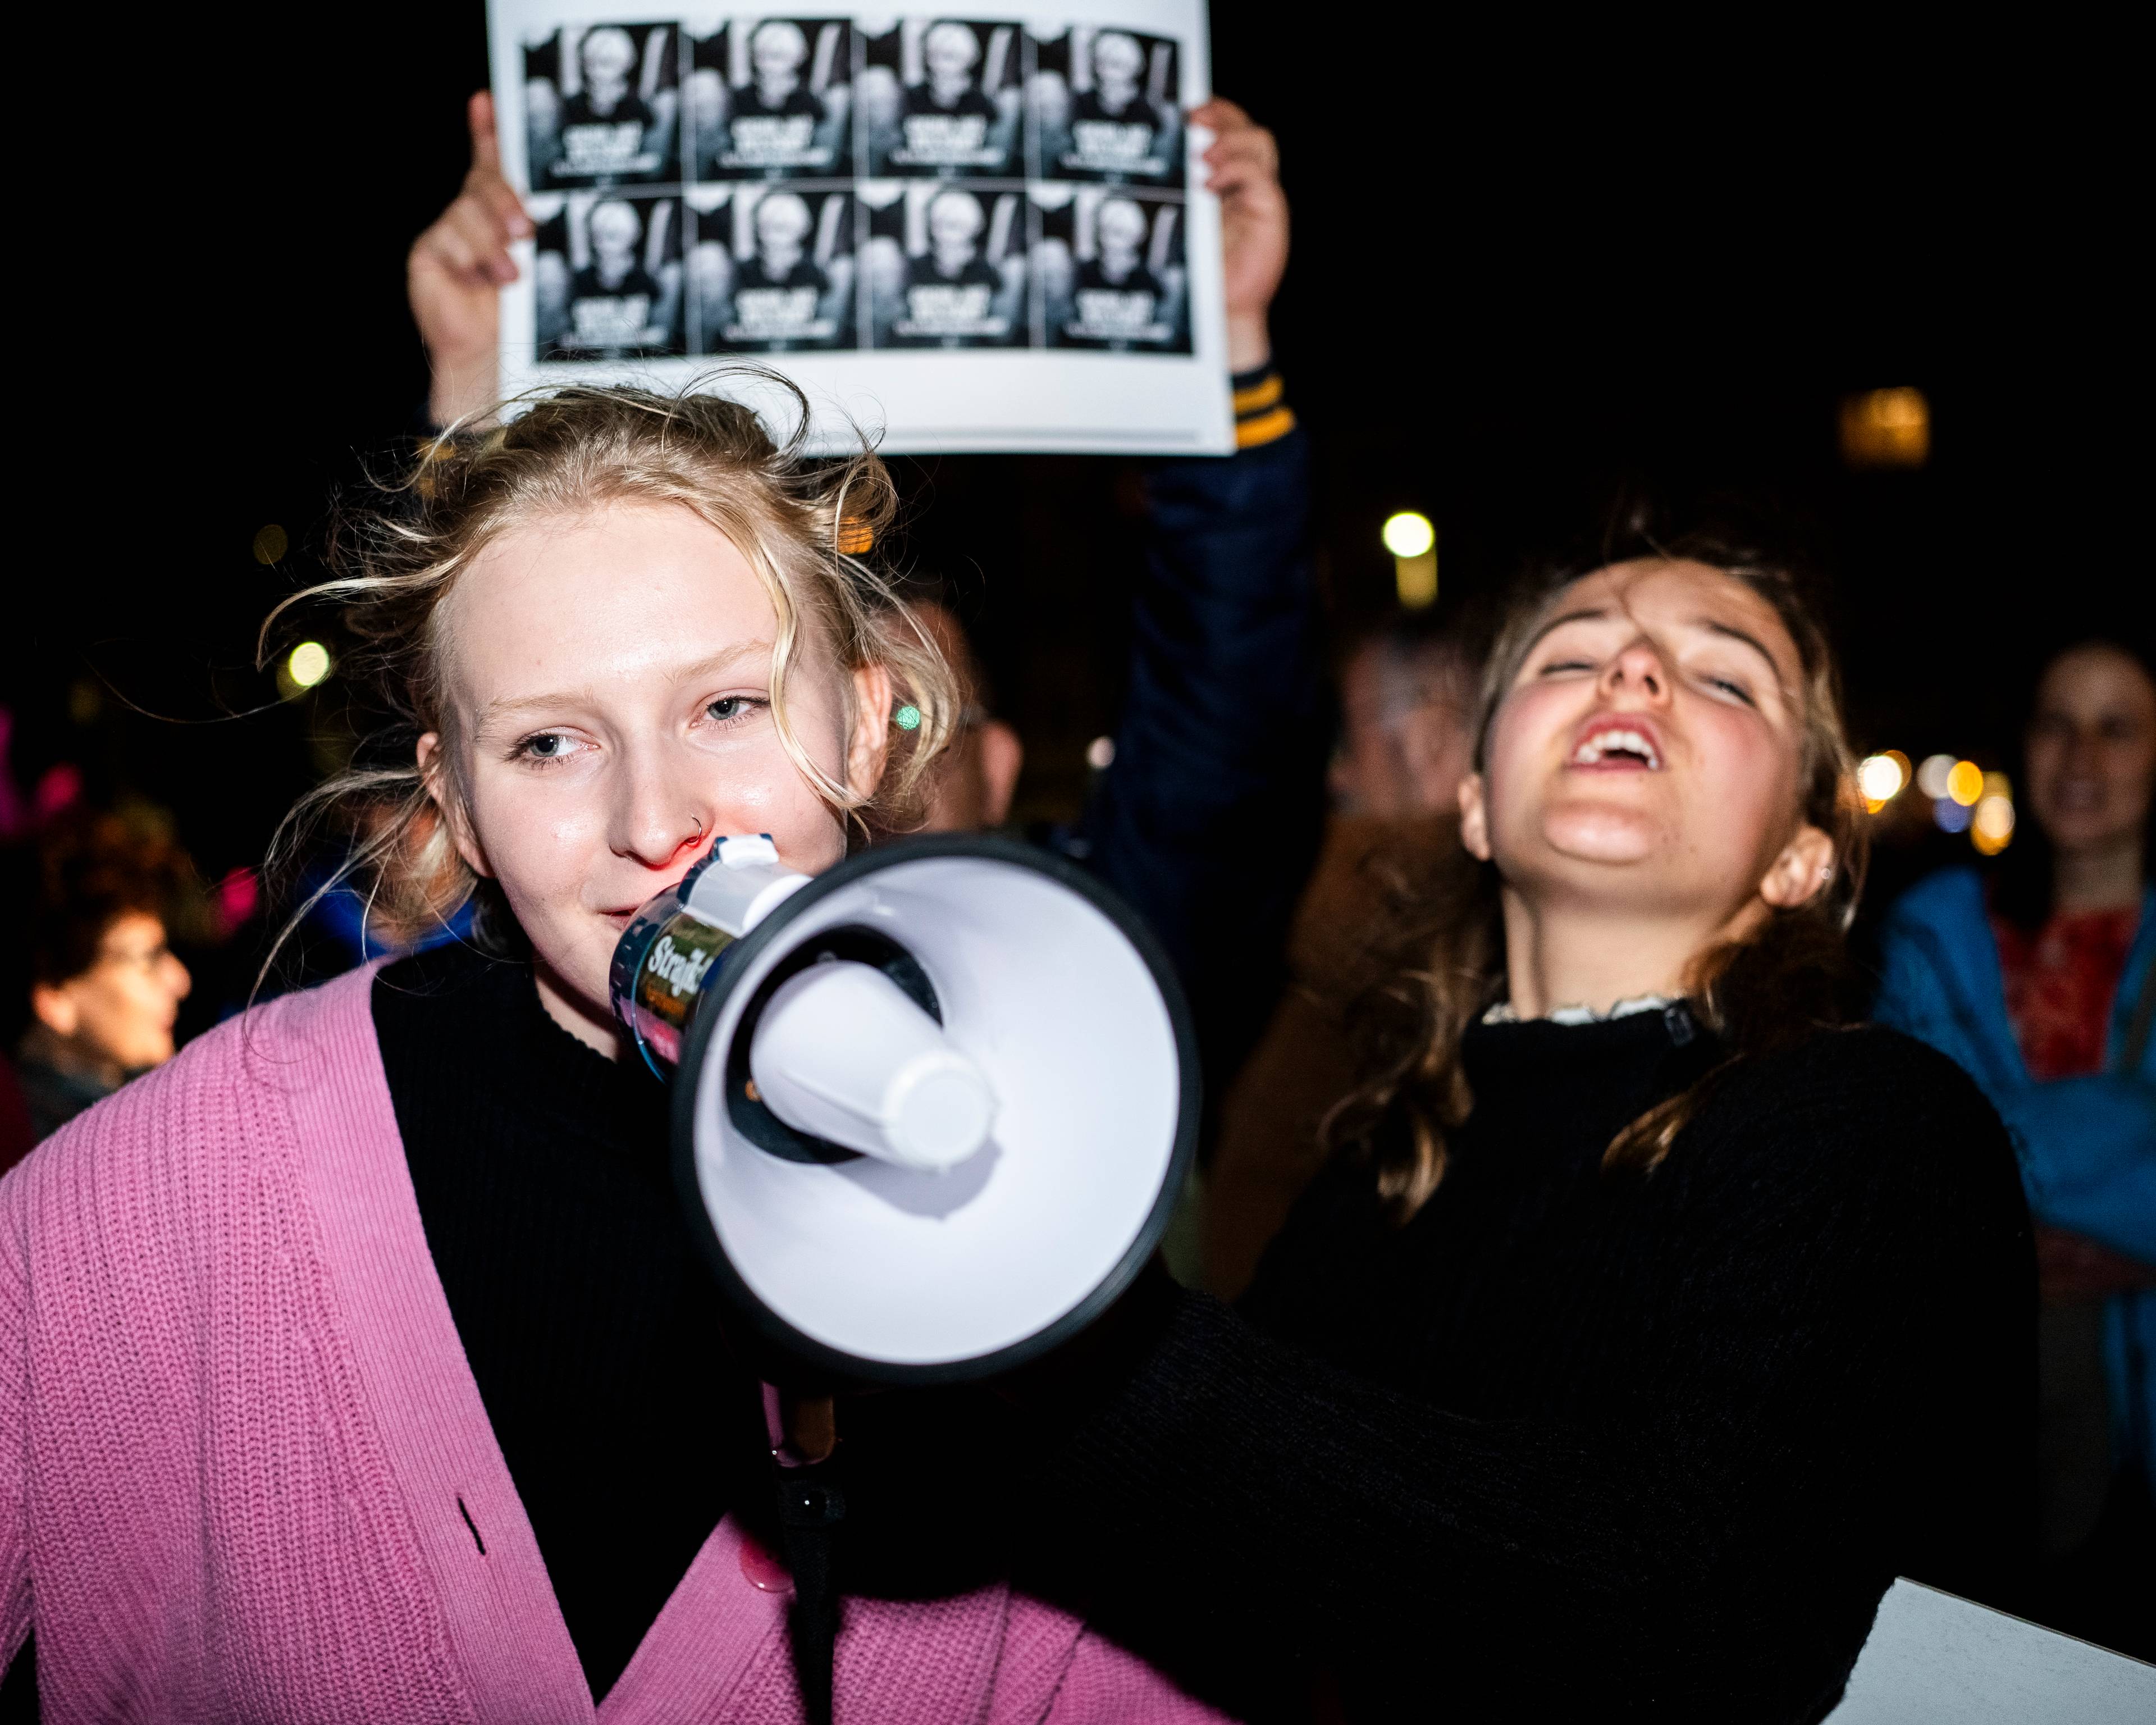 scena z manifestacji ulicznej, dziewczyna mówi przez megafon